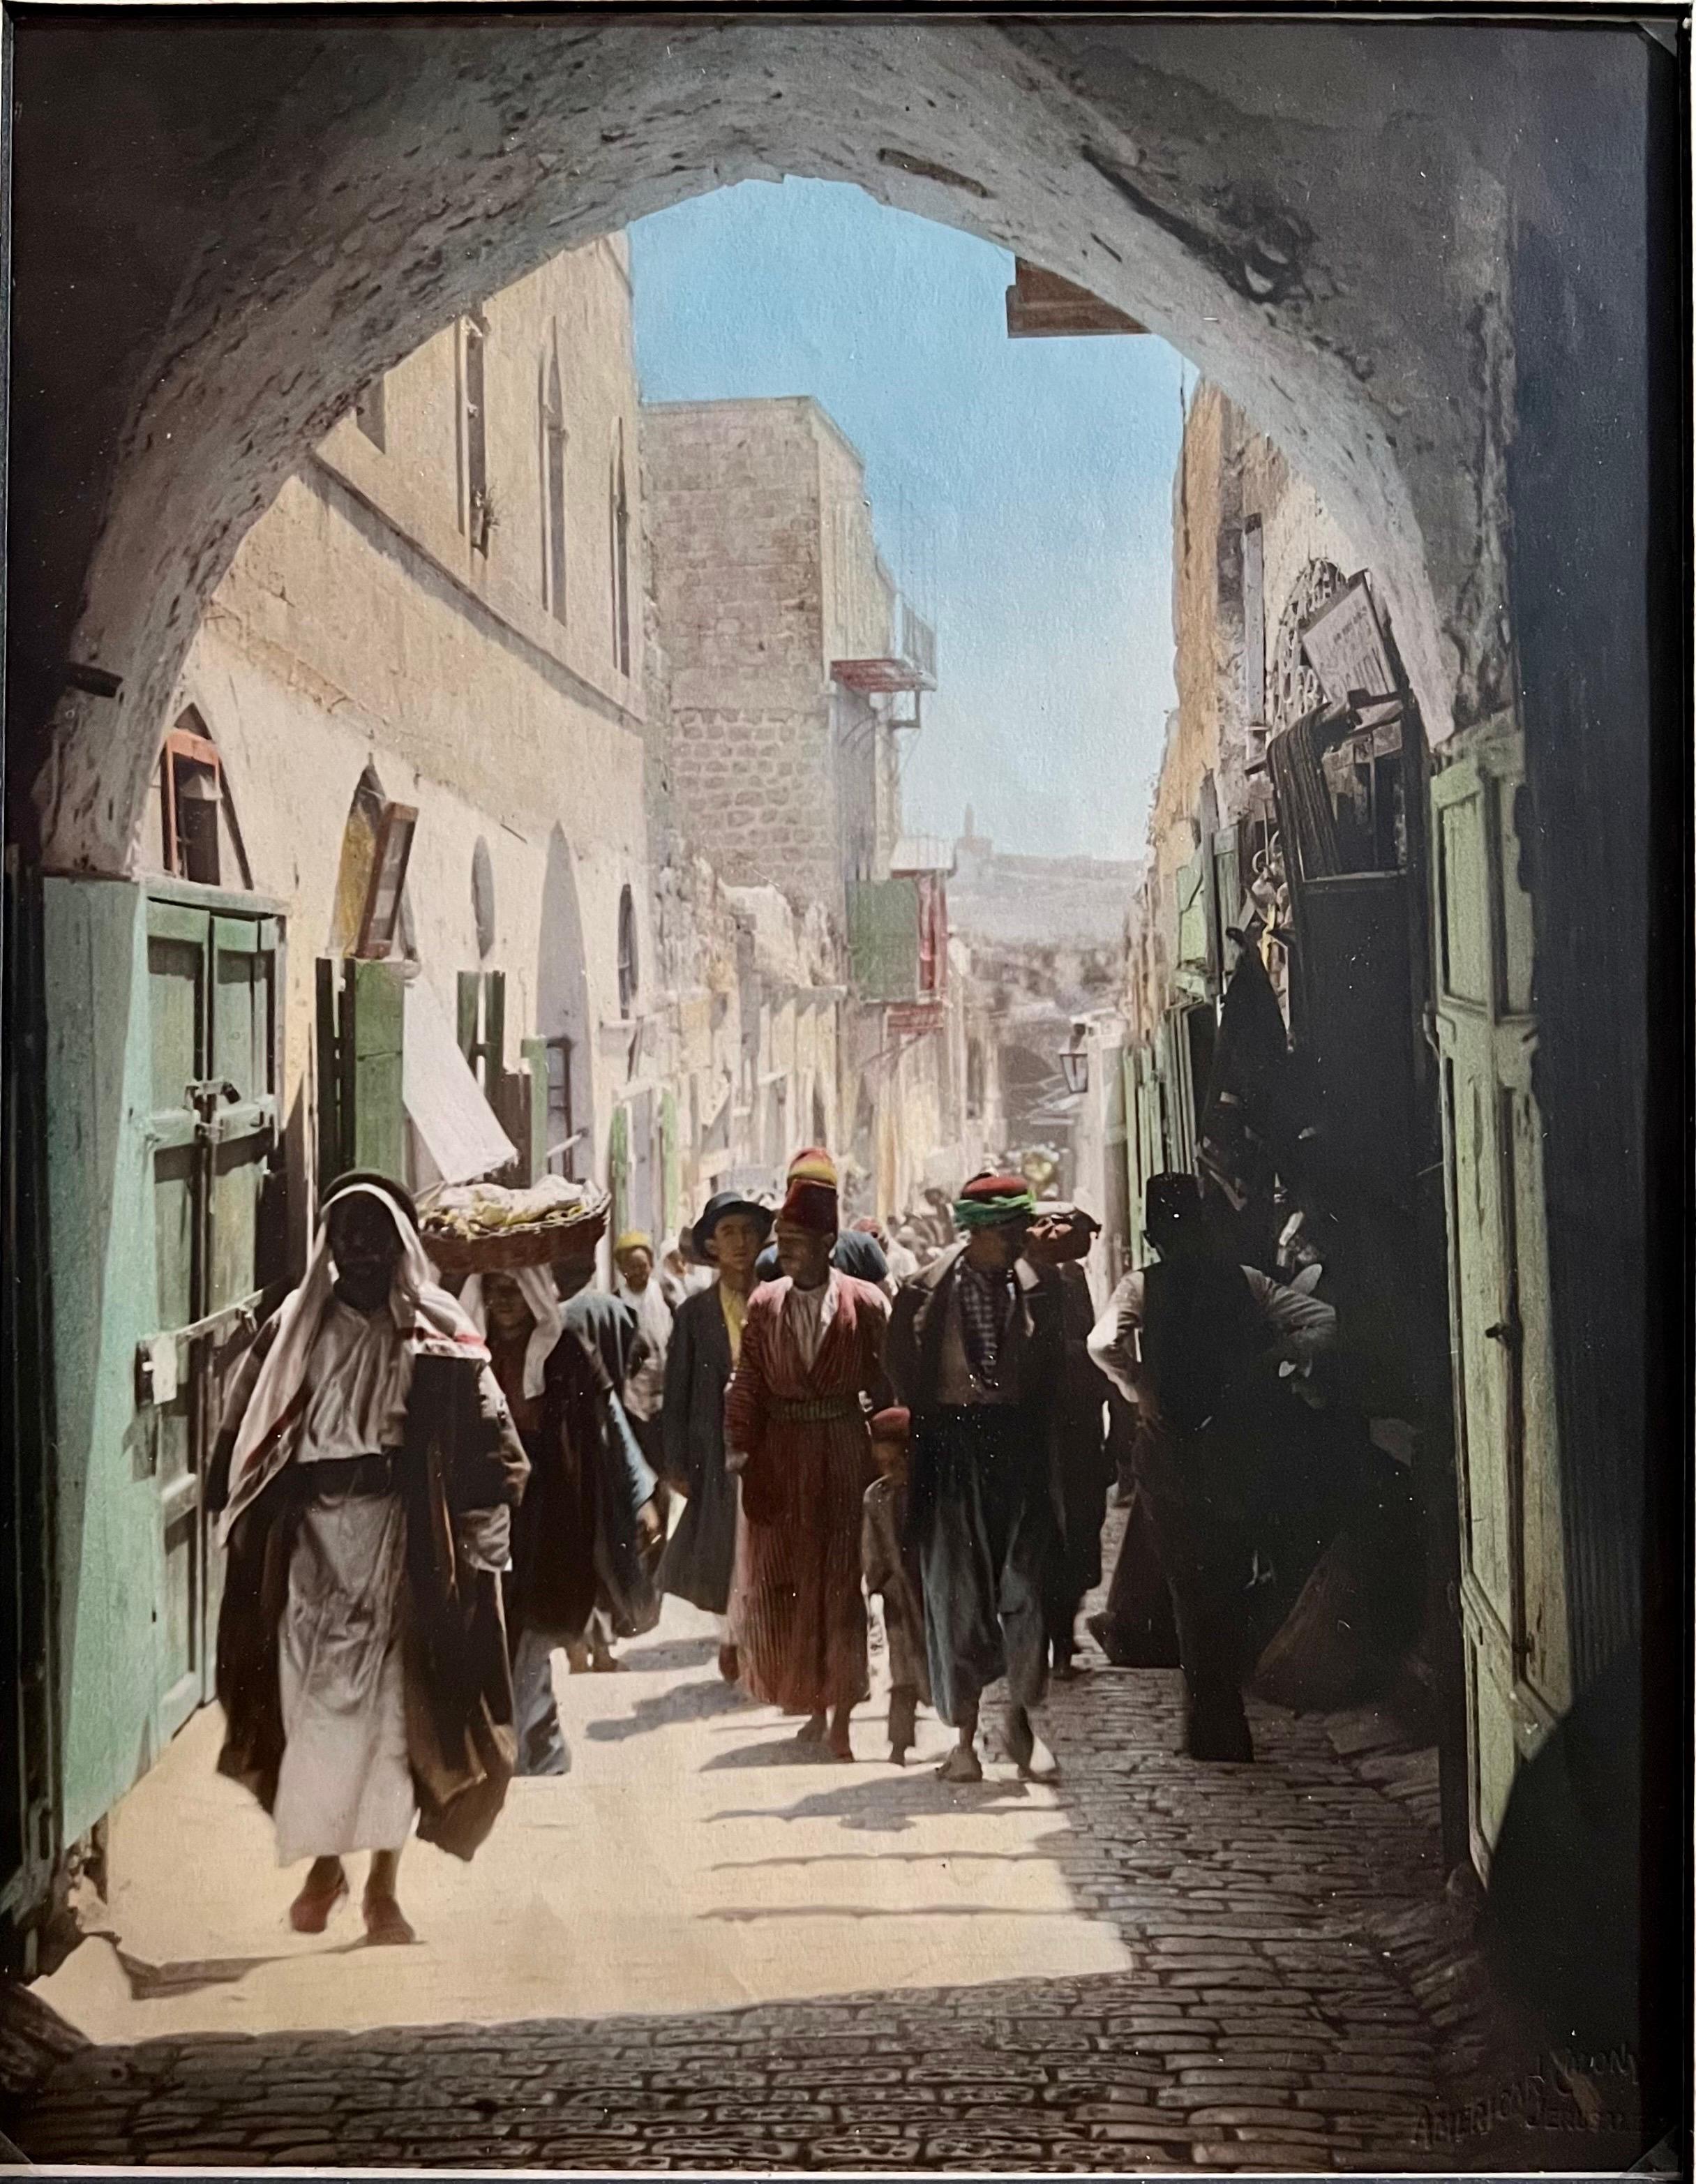 Vintage Large Albumen Photo Jerusalem Photograph American Colony Old City Market